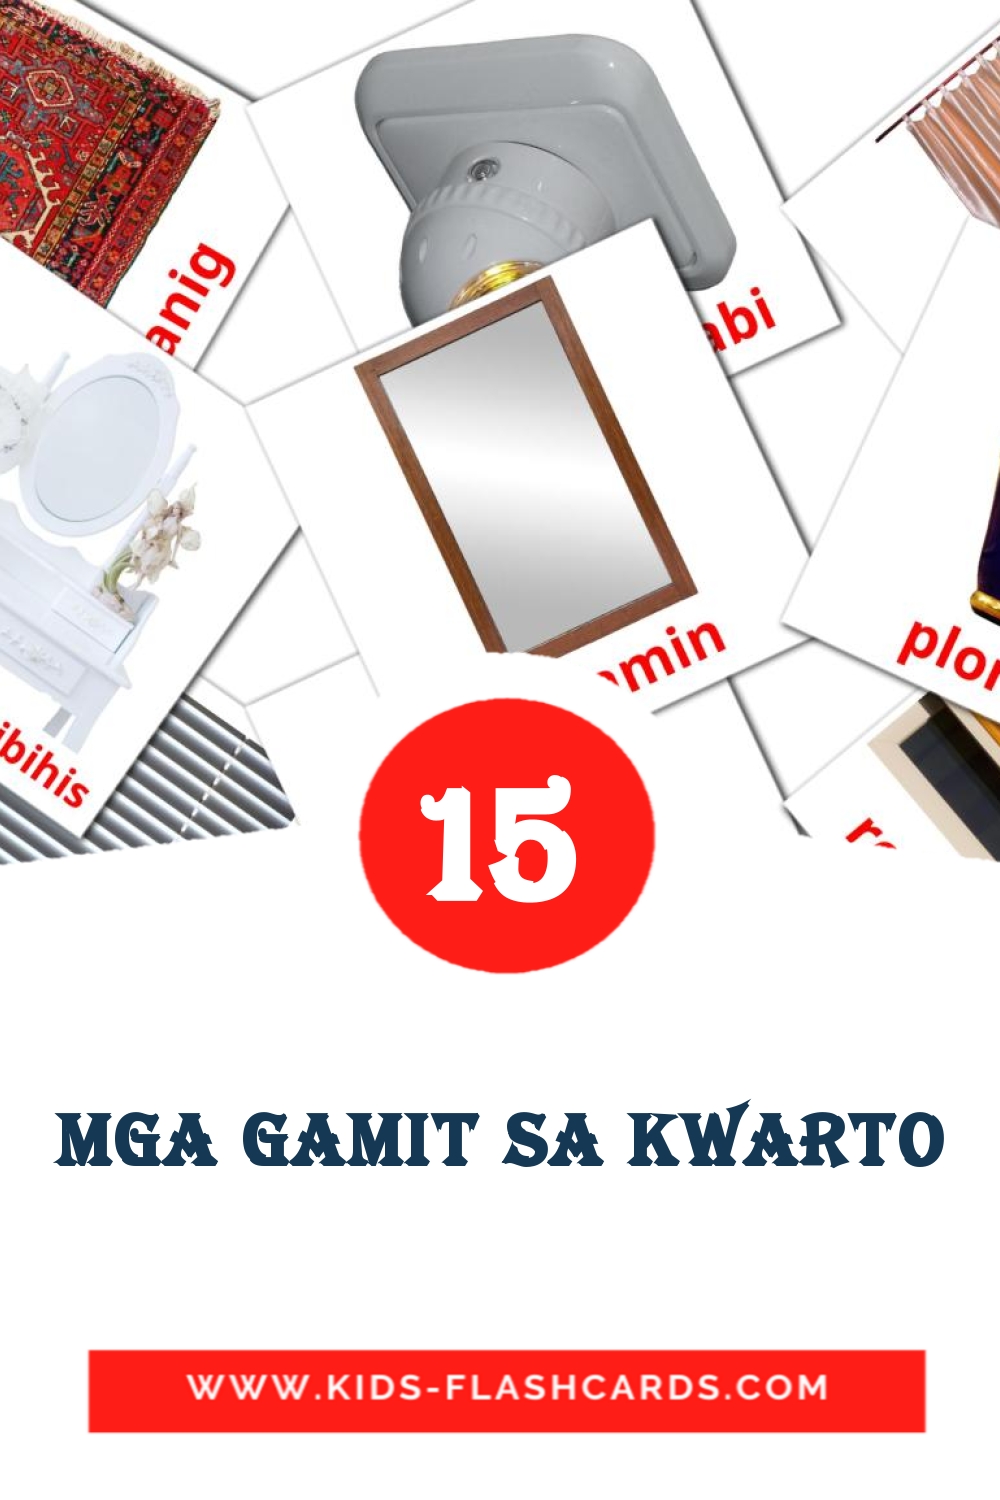 15 tarjetas didacticas de Mga gamit sa kwarto para el jardín de infancia en filipino